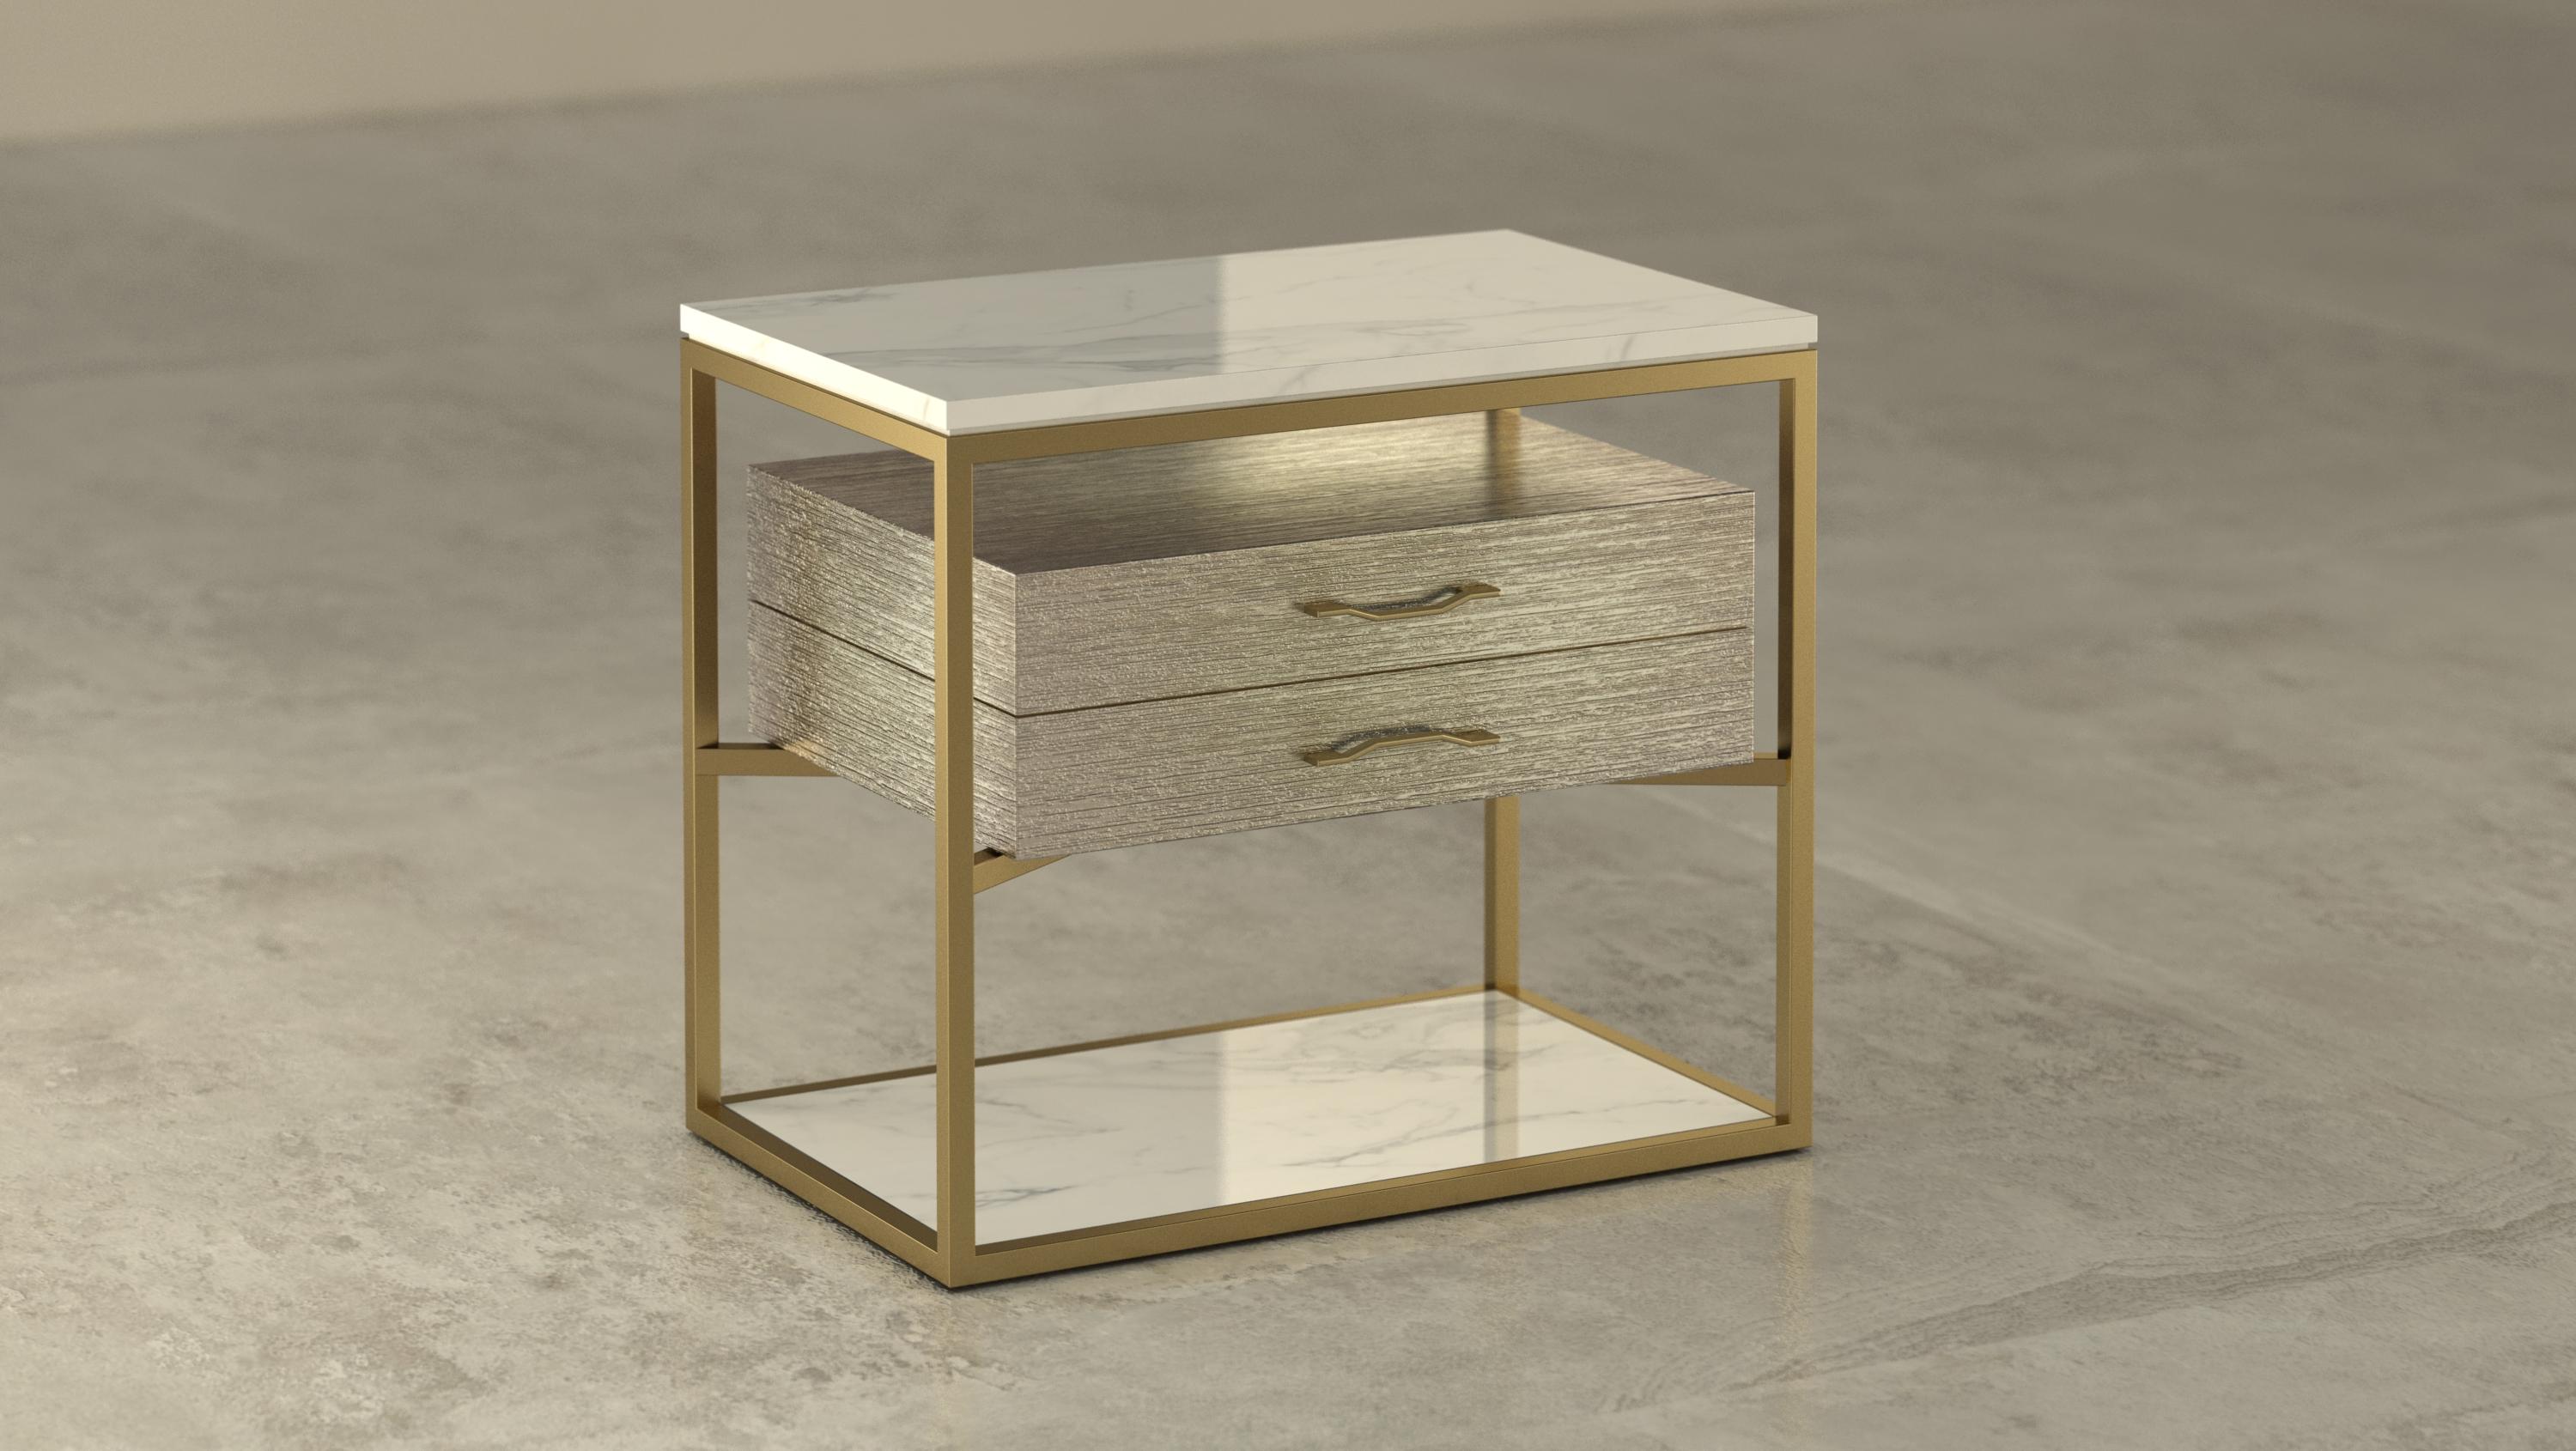 - Table de chevet composée de marbre, bois et métal, créée par l'architecte Michele Arcarese en collaboration avec Giovannozzi.
- Dessus avec rainure, en marbre type 